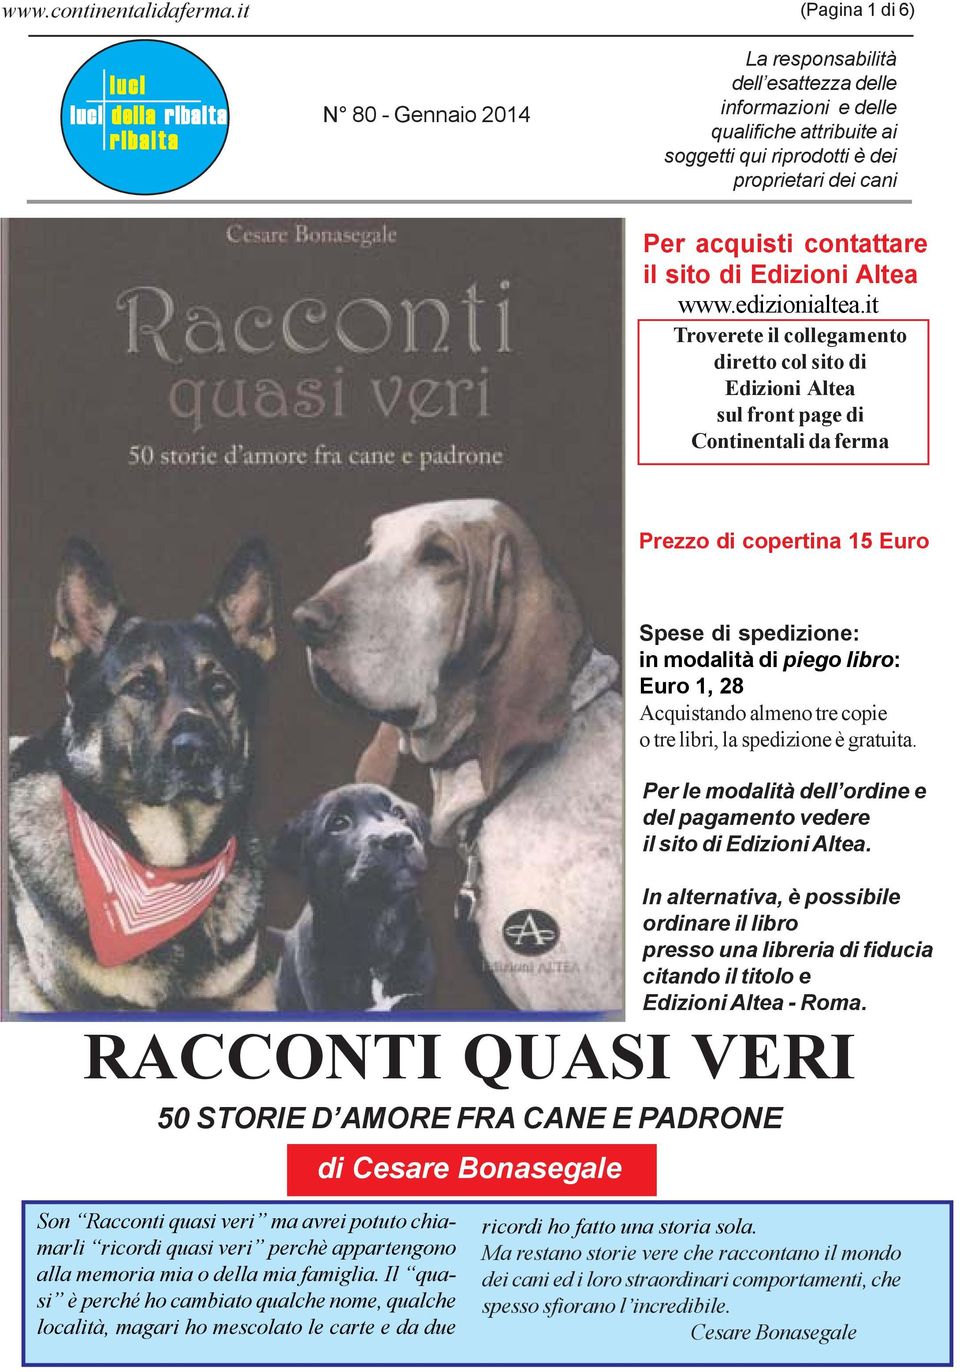 dei cani Per acquisti contattare il sito di Edizioni Altea www.edizionialtea.